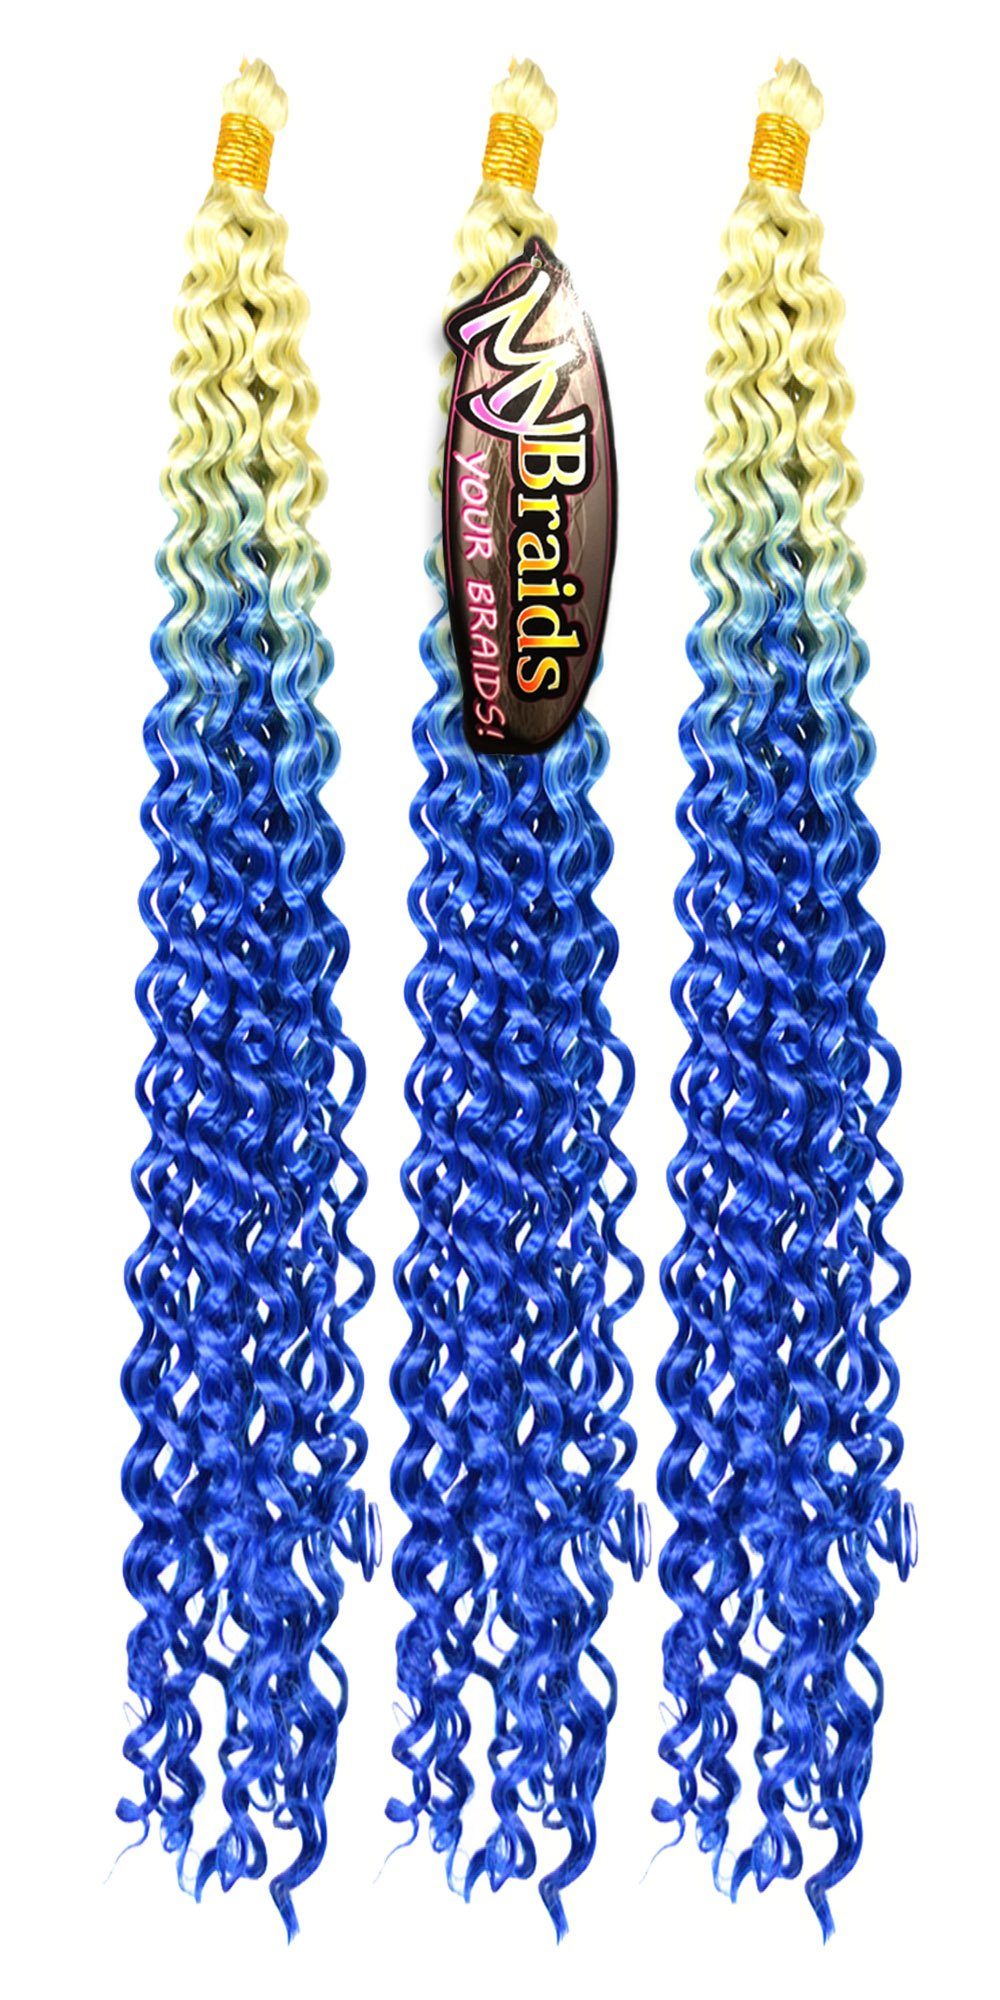 MyBraids YOUR BRAIDS! Kunsthaar-Extension Wave Ombre Crochet Wellig 3er Pack Zöpfe Braids 19-WS Deep Flechthaar Hellblond-Blau